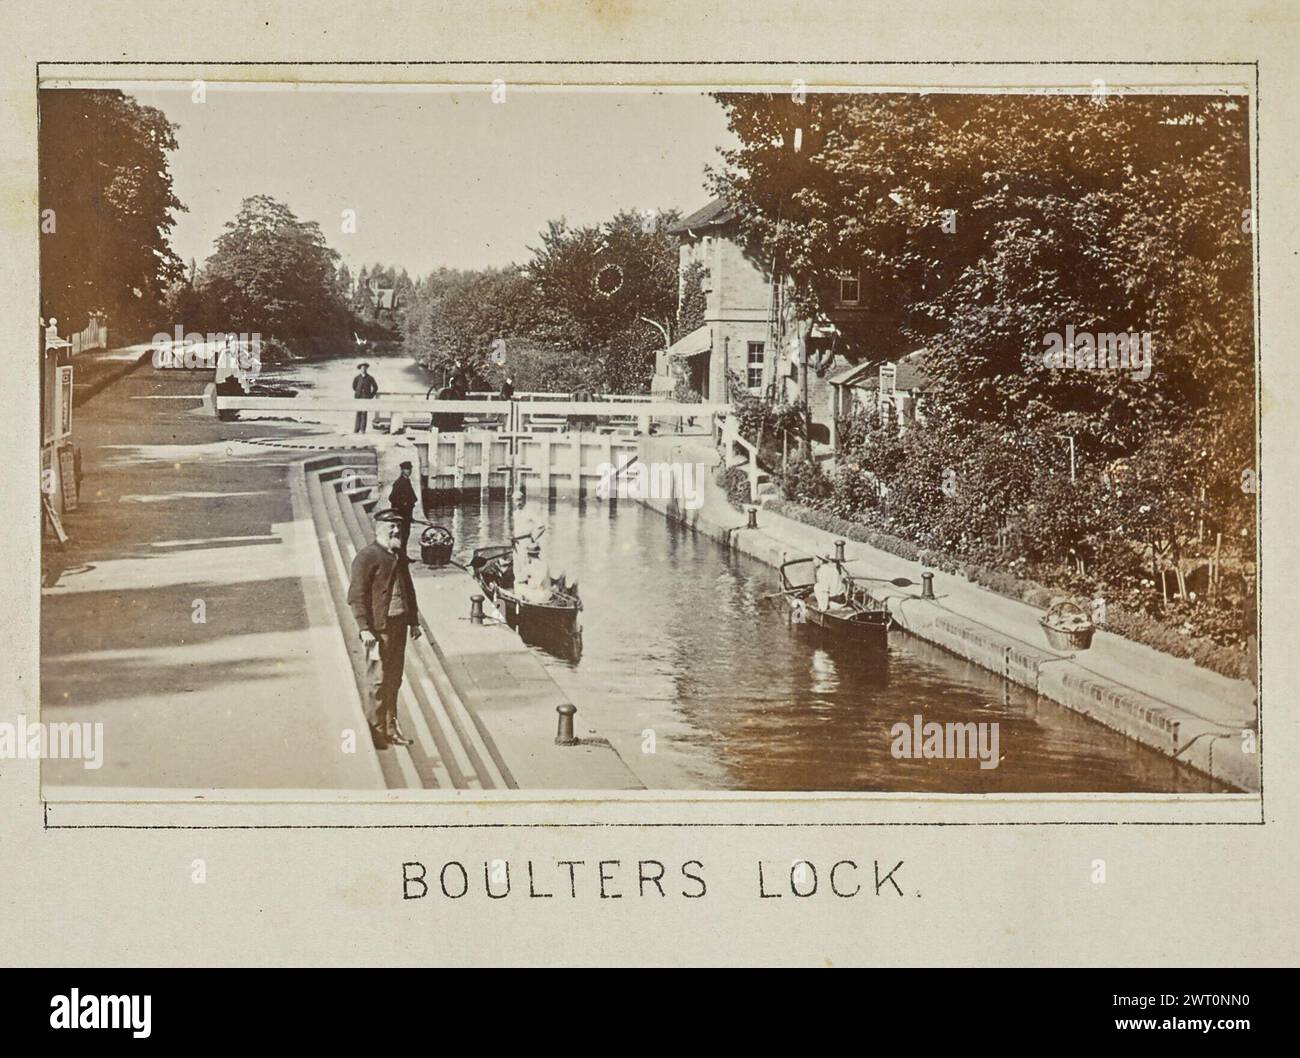 Boulters Lock. Henry W. Taunt, fotografo (britannico, 1842 - 1922) 1897 una delle cinque fotografie che illustrano una mappa stampata di Taplow, Bray e l'area circostante lungo il Tamigi. La fotografia mostra una vista del lucchetto di Boulter. Due barche, ciascuna con passeggeri, attendono su entrambi i lati della chiusa l'acqua che si solleva. L'armadietto e molti altri uomini stanno ai lati della chiusa e un ponte sul fiume. (Recto, montaggio) centro inferiore, sotto l'immagine, stampato con inchiostro nero: "BLOCCO BOULTERS" Foto Stock